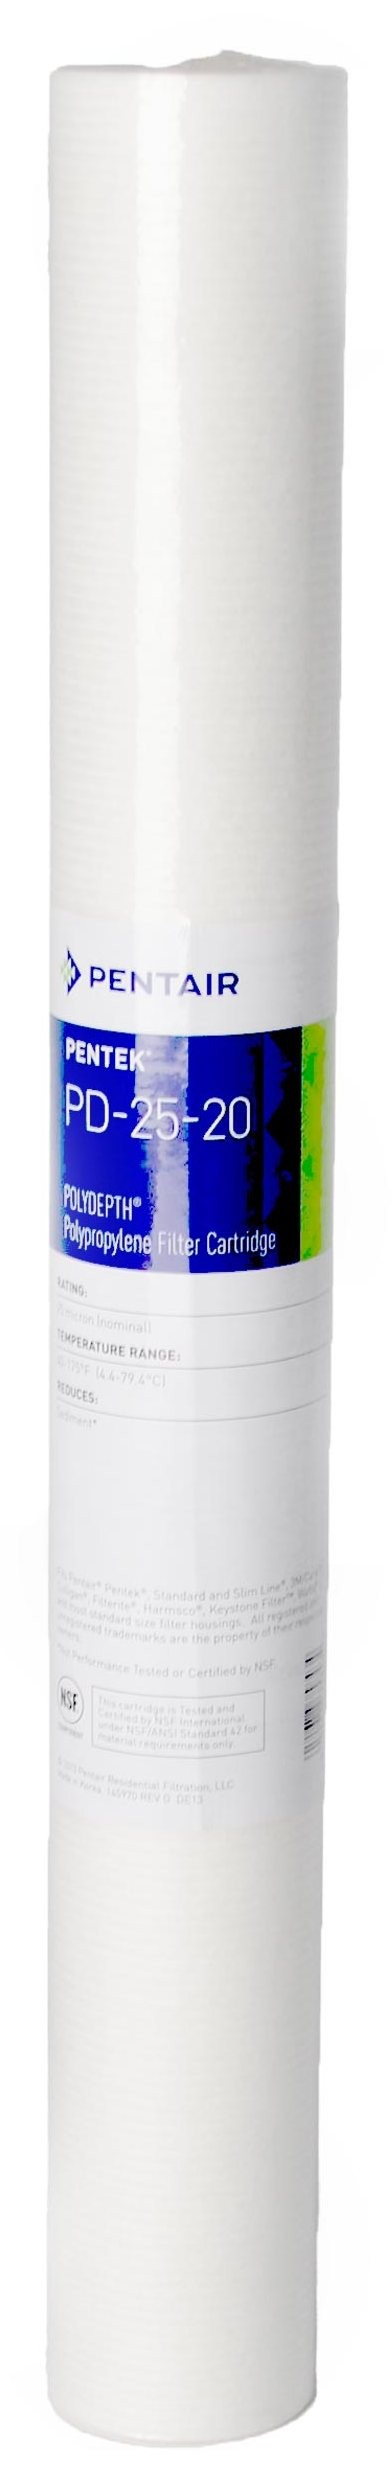 Картридж для фільтра Pentair PENTEK PD-25-20 POLYDEPTH 20sl' 25мкм (155758-43)